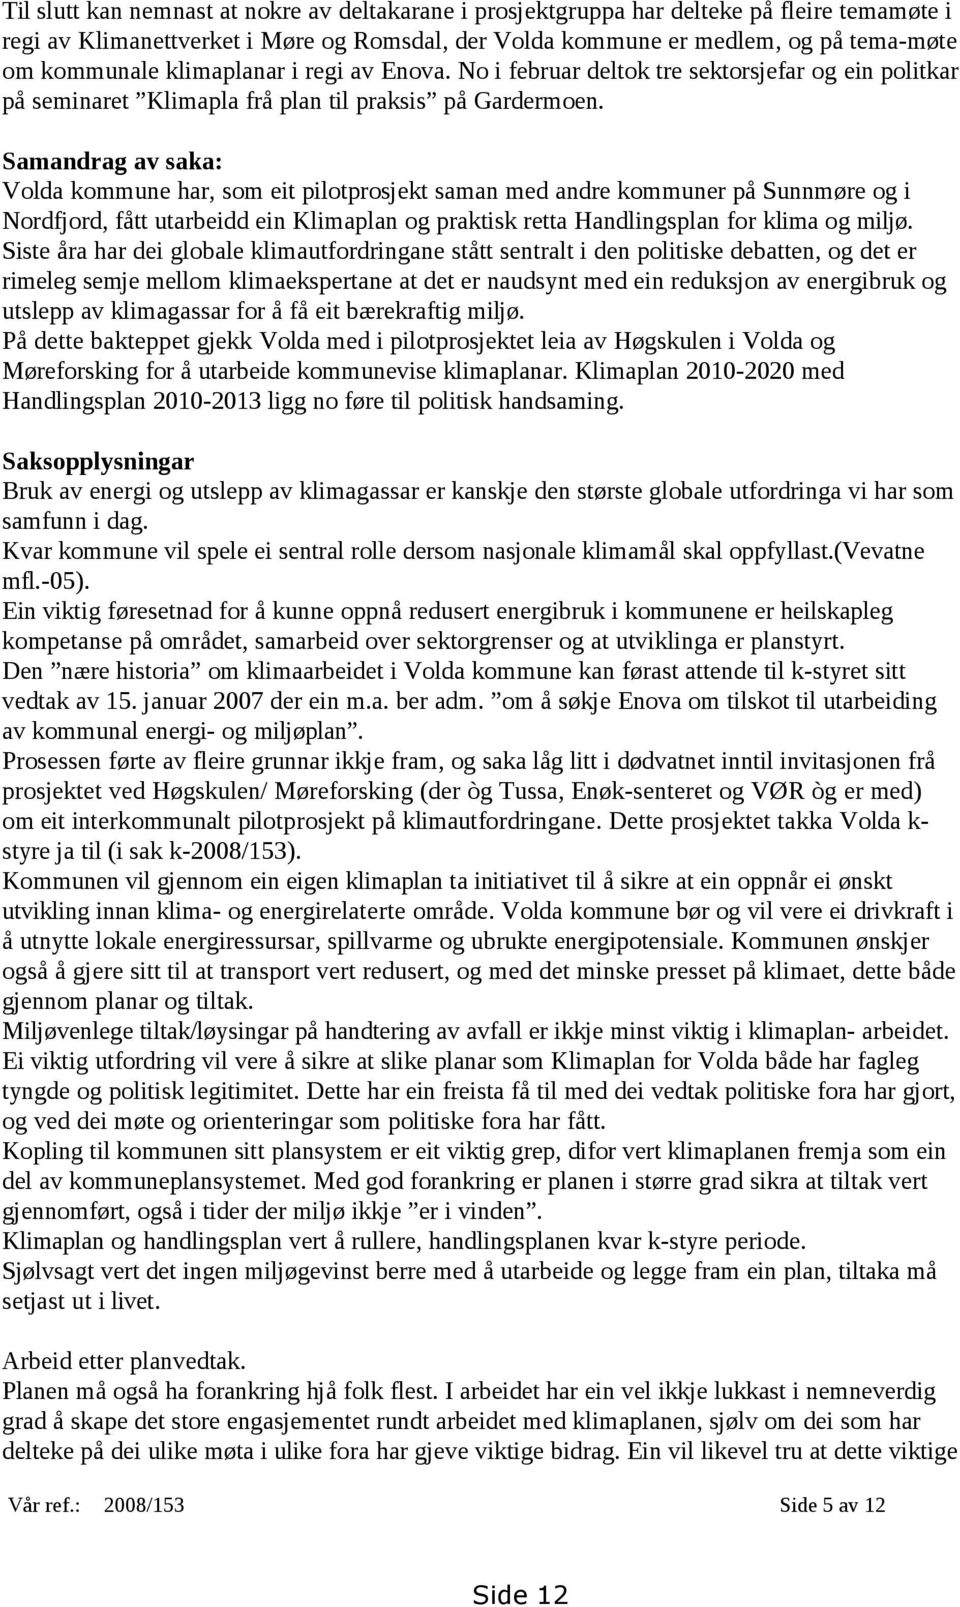 Samandrag av saka: Volda kommune har, som eit pilotprosjekt saman med andre kommuner på Sunnmøre og i Nordfjord, fått utarbeidd ein Klimaplan og praktisk retta Handlingsplan for klima og miljø.